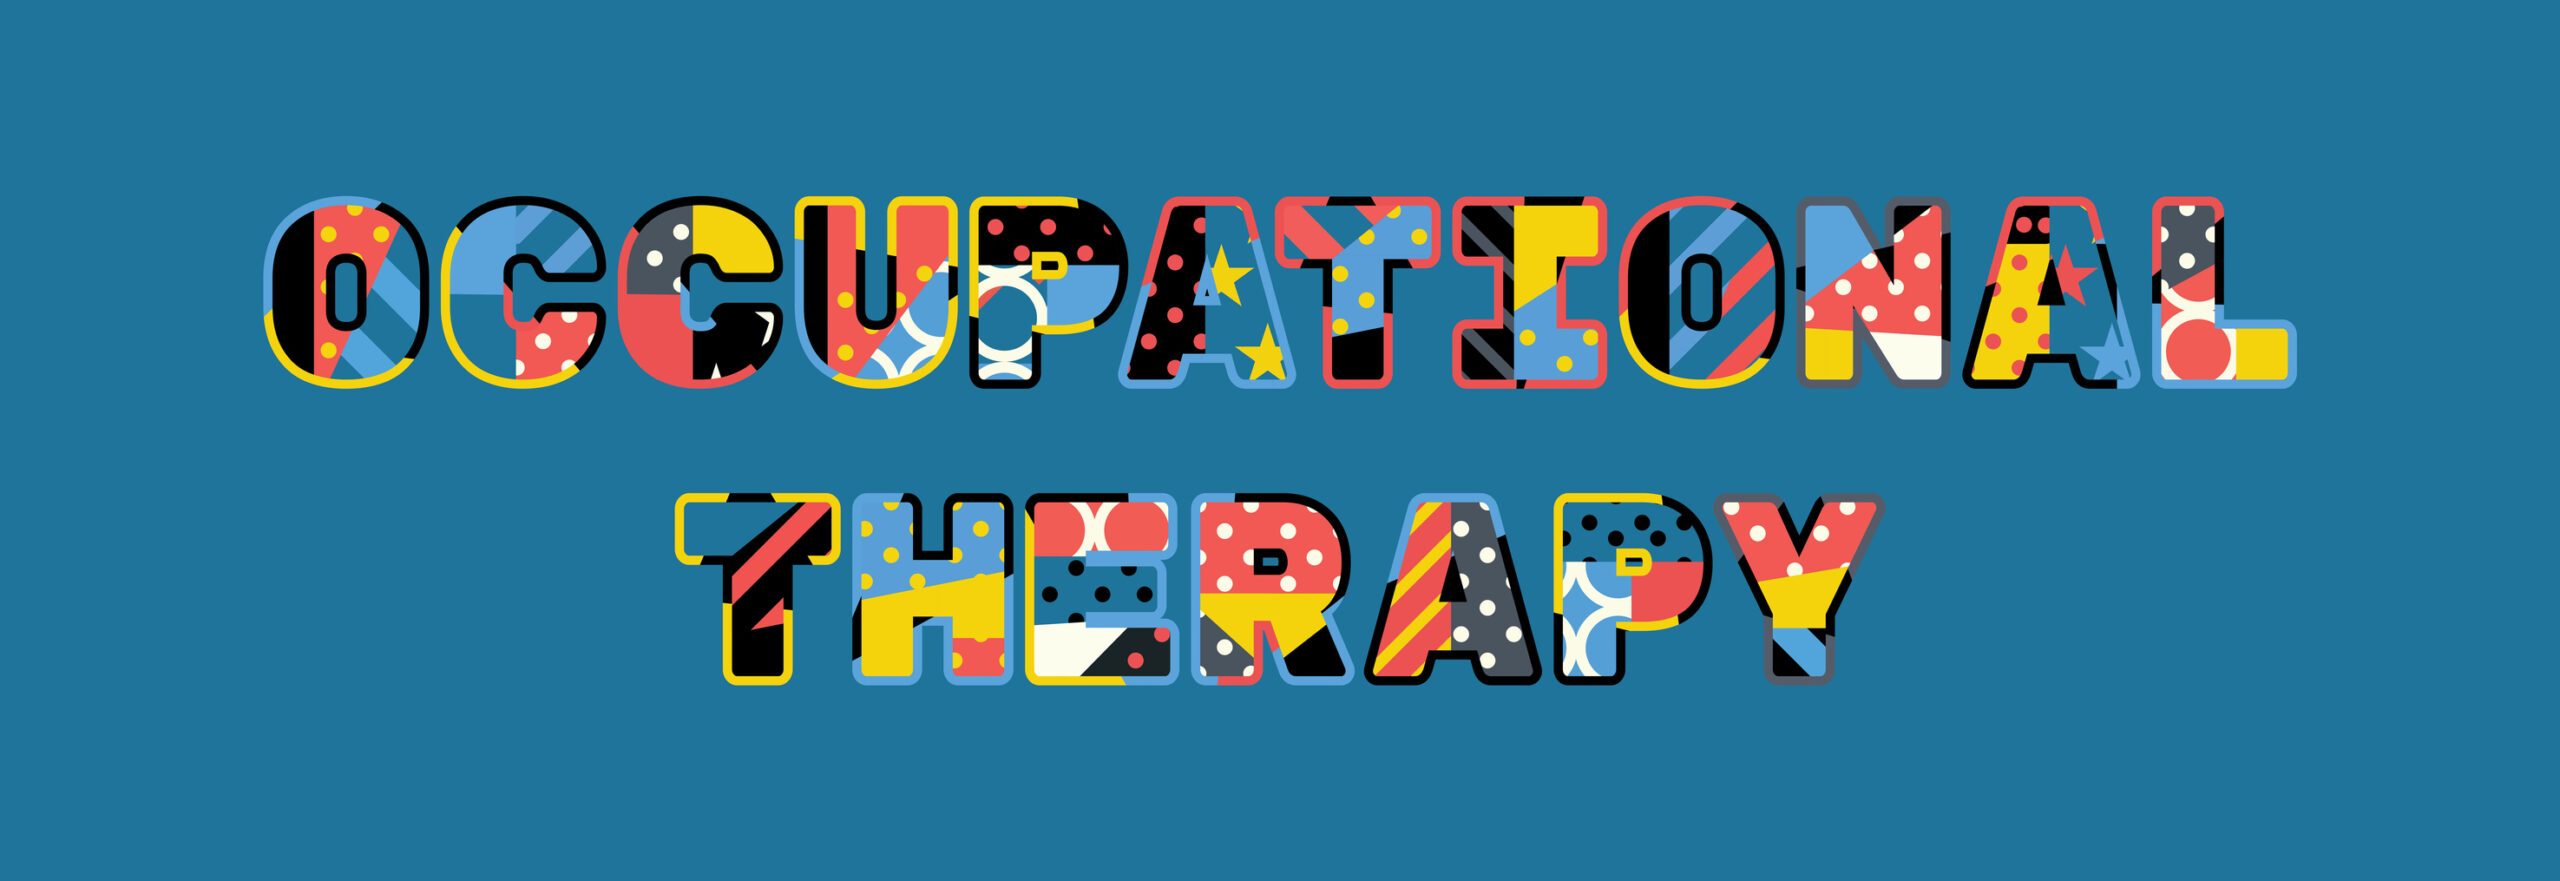 imagine grafică, textul spune "ocupational therapy" cu litere divers colorate